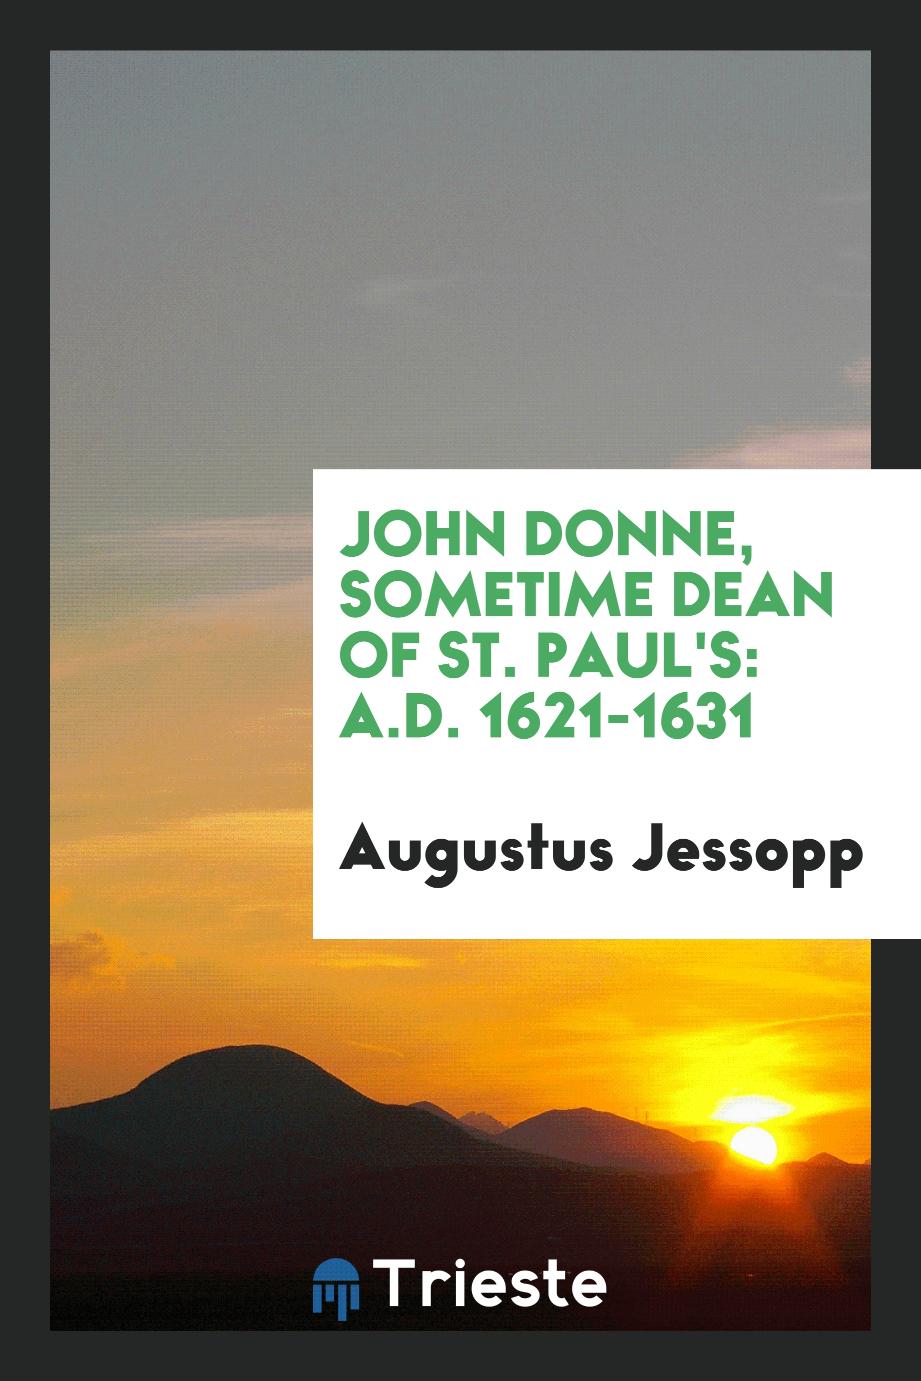 John Donne, sometime dean of St. Paul's: A.D. 1621-1631